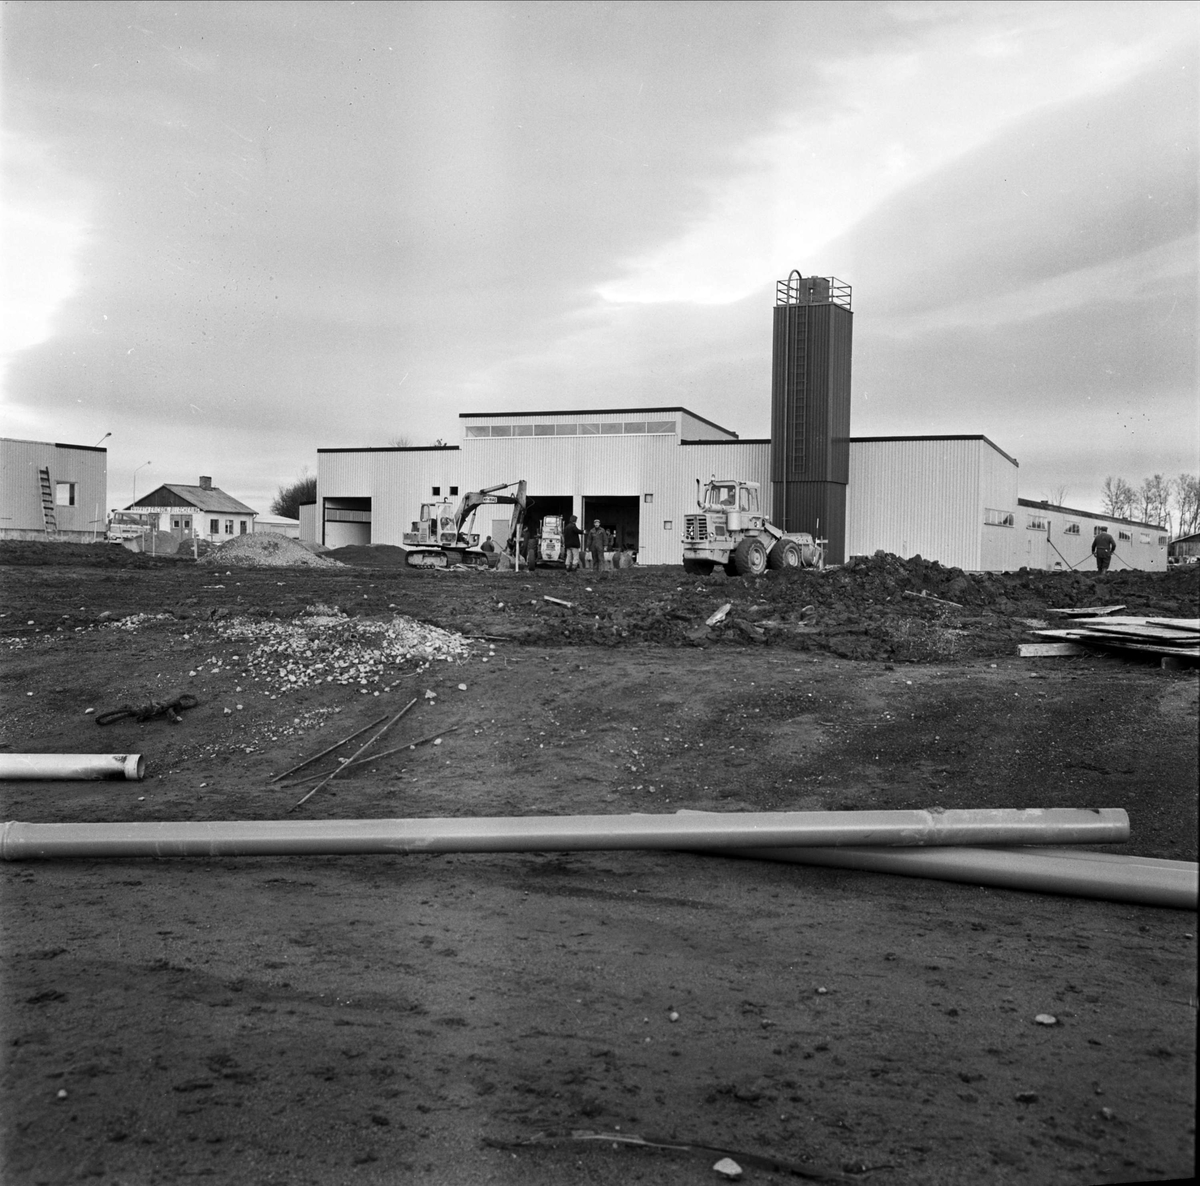 Avloppsreningsverk i Tierp, Uppland oktober 1973